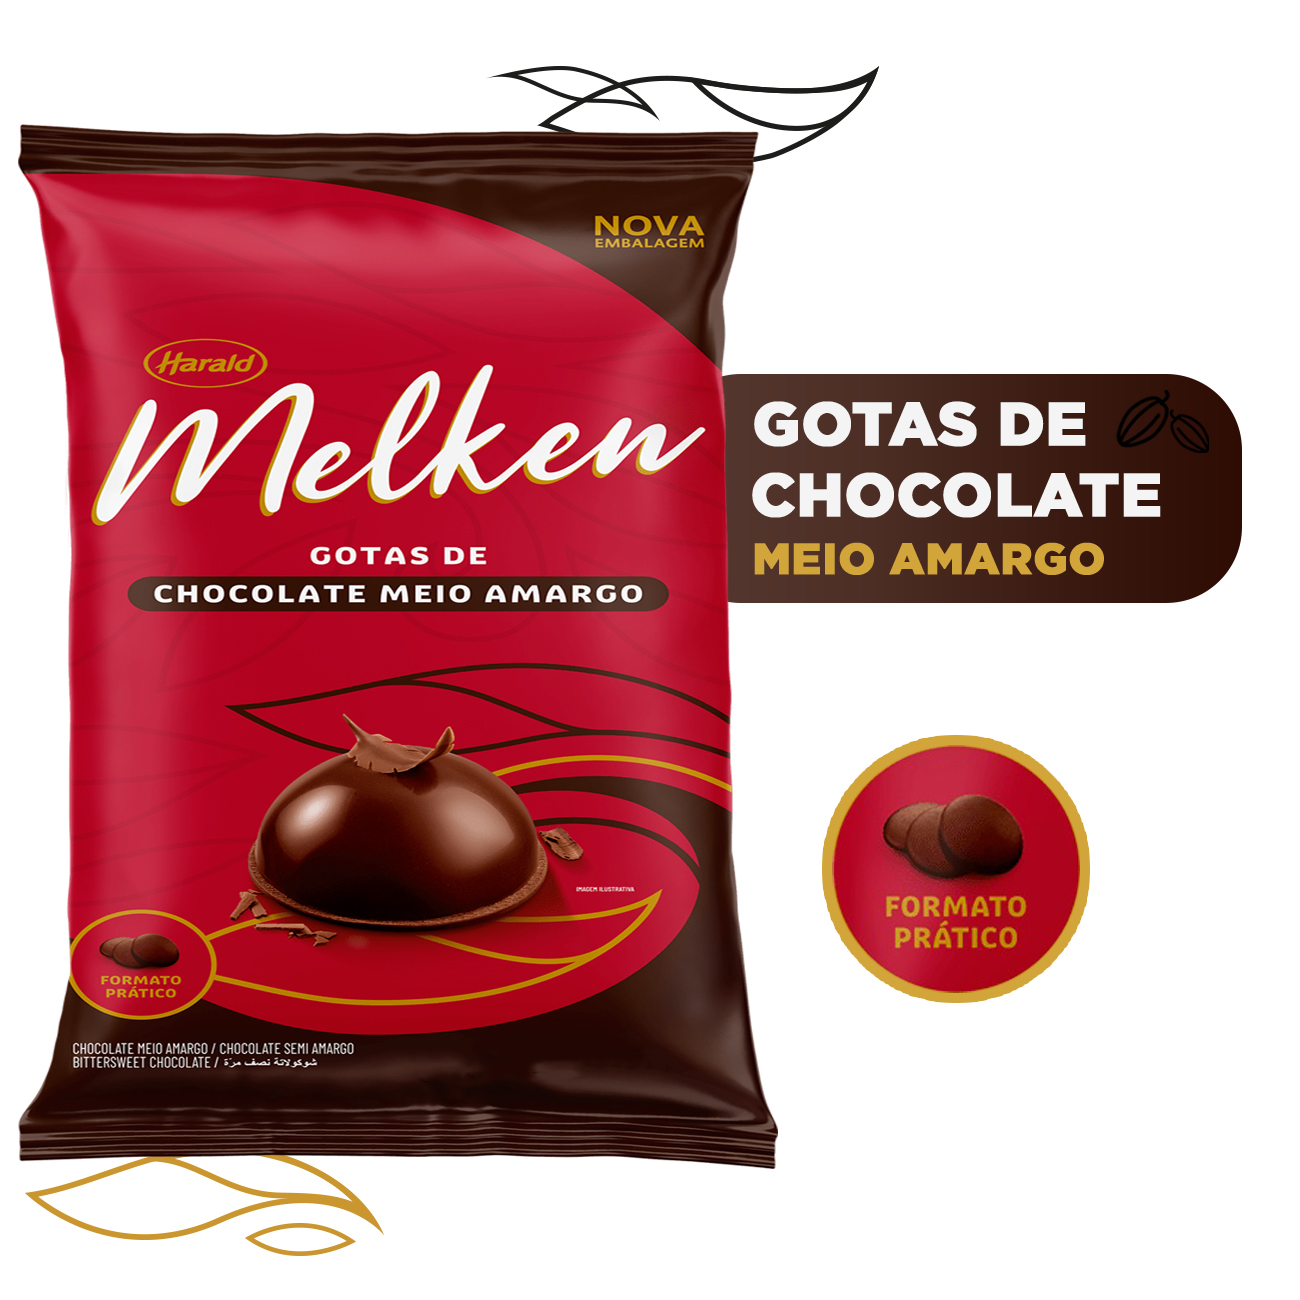 Gotas de Chocolate Harald Melken Meio Amargo 1,05kg